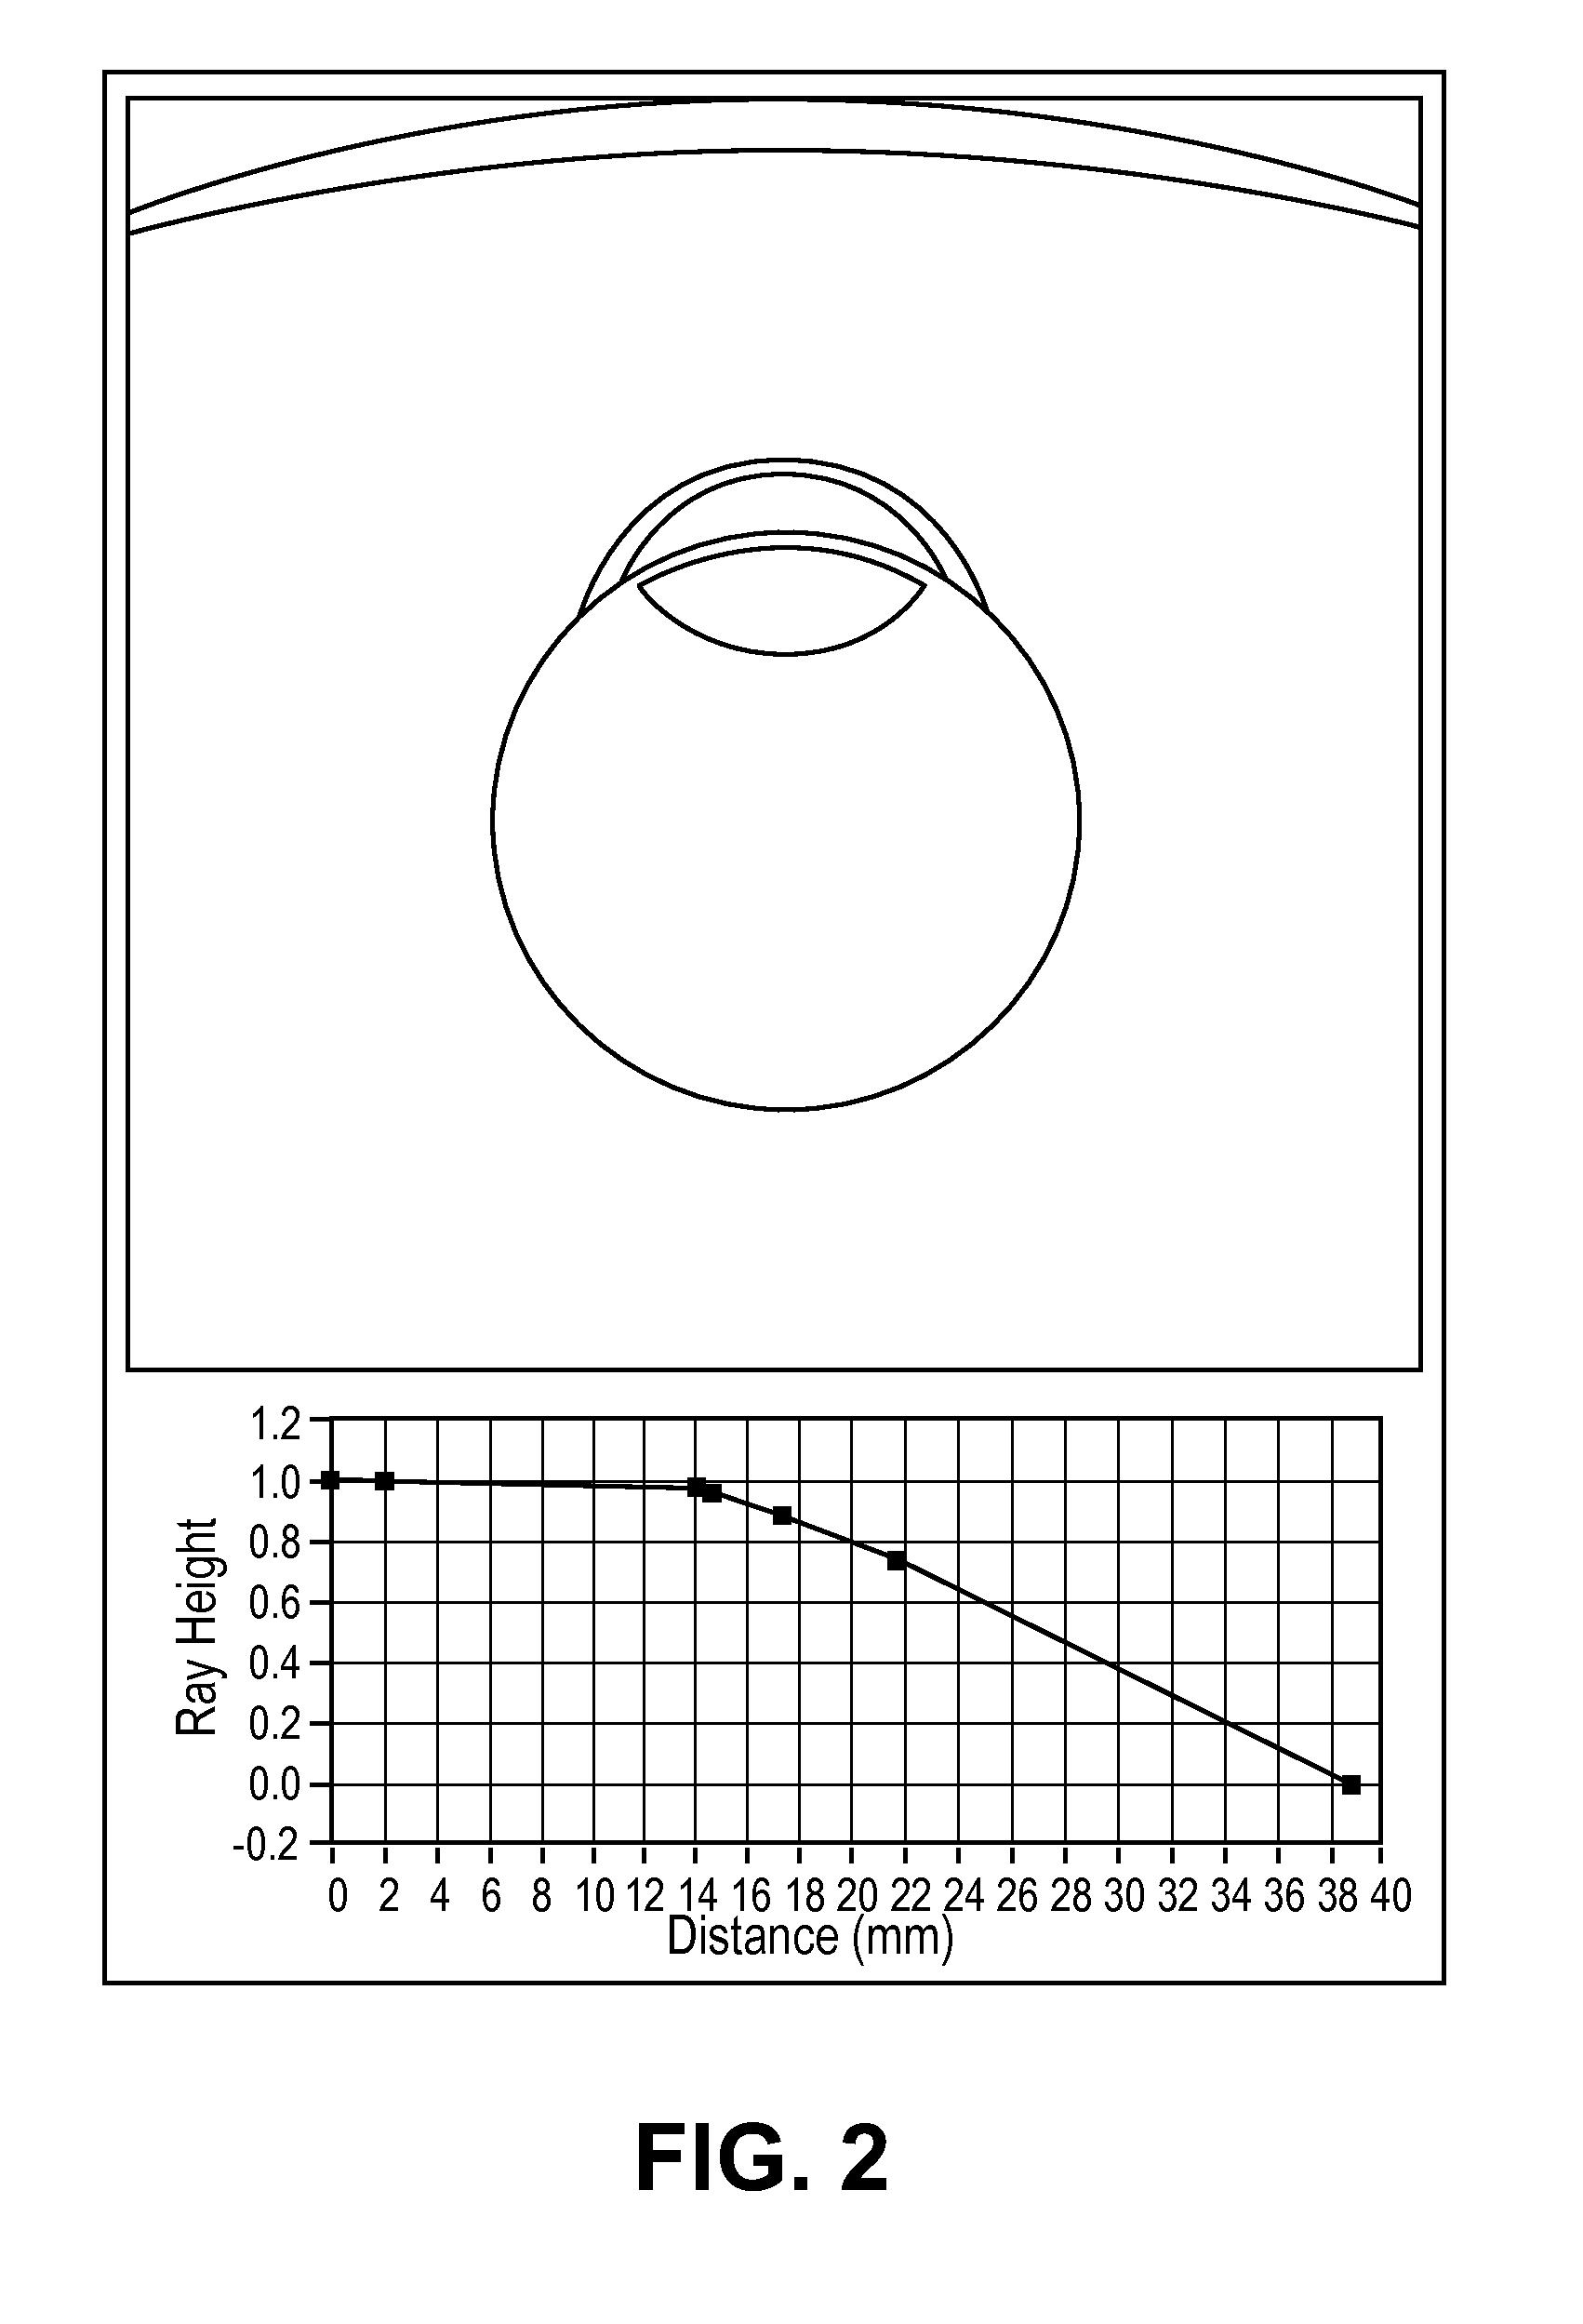 Lens capsule size estimation